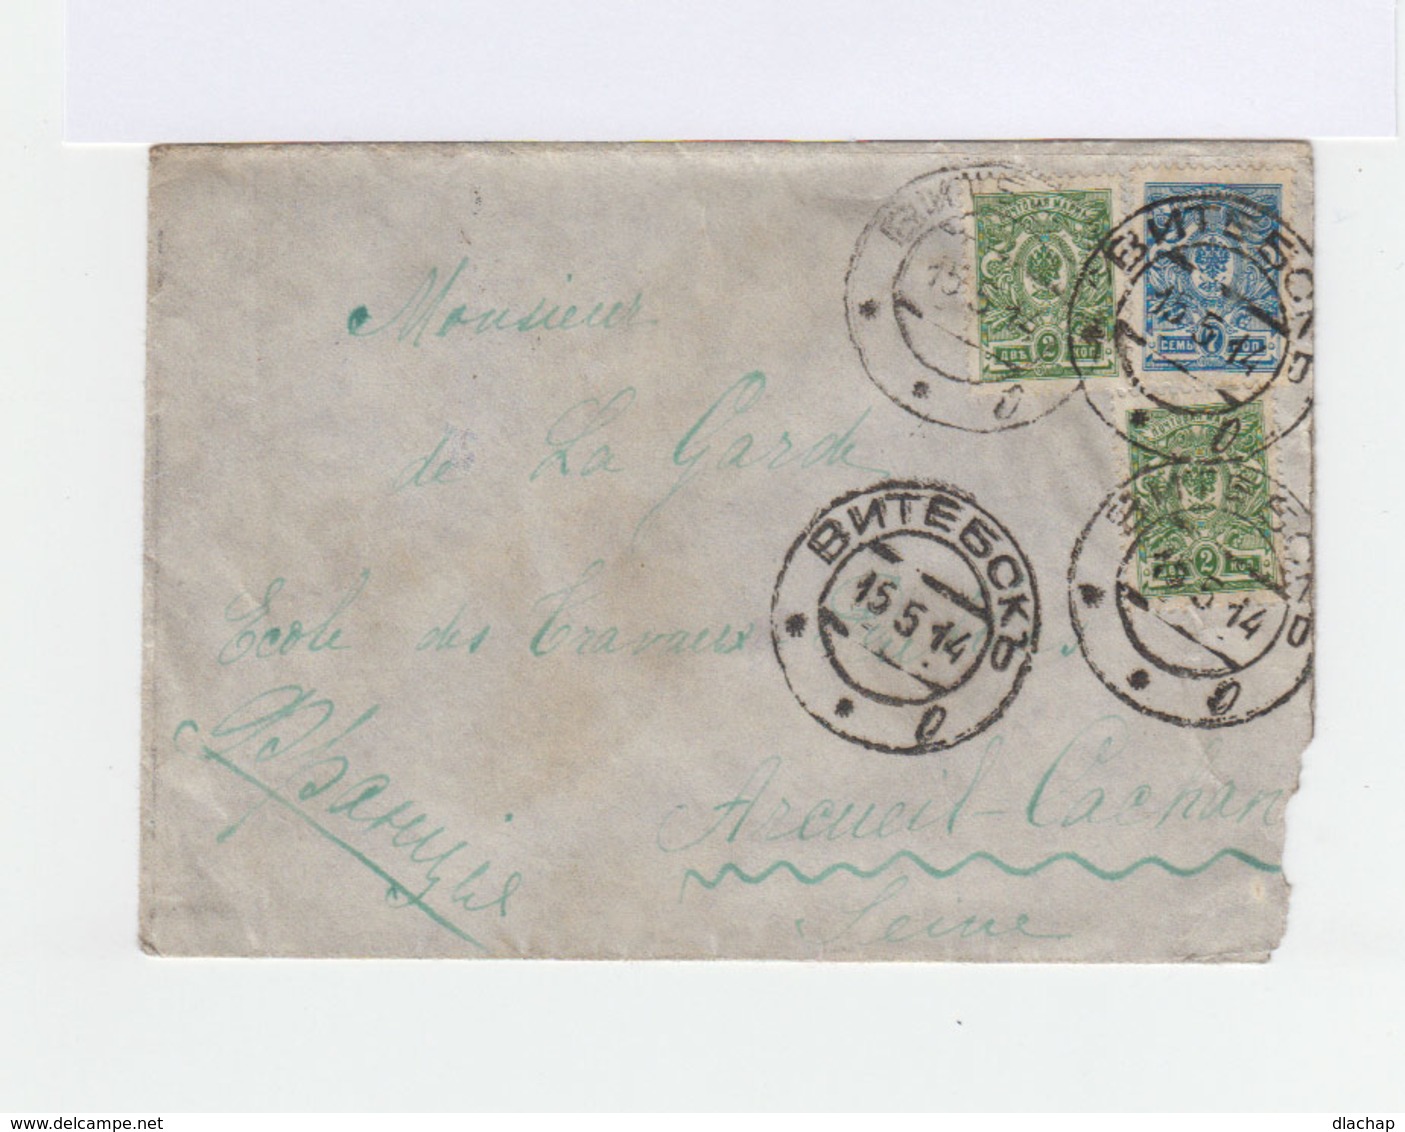 Sur Enveloppe 3 Timbres Empire Russe Armoiries Oblitération Russe 1914. CAD Arcueil Cachan Seine. (883) - Machines à Affranchir (EMA)